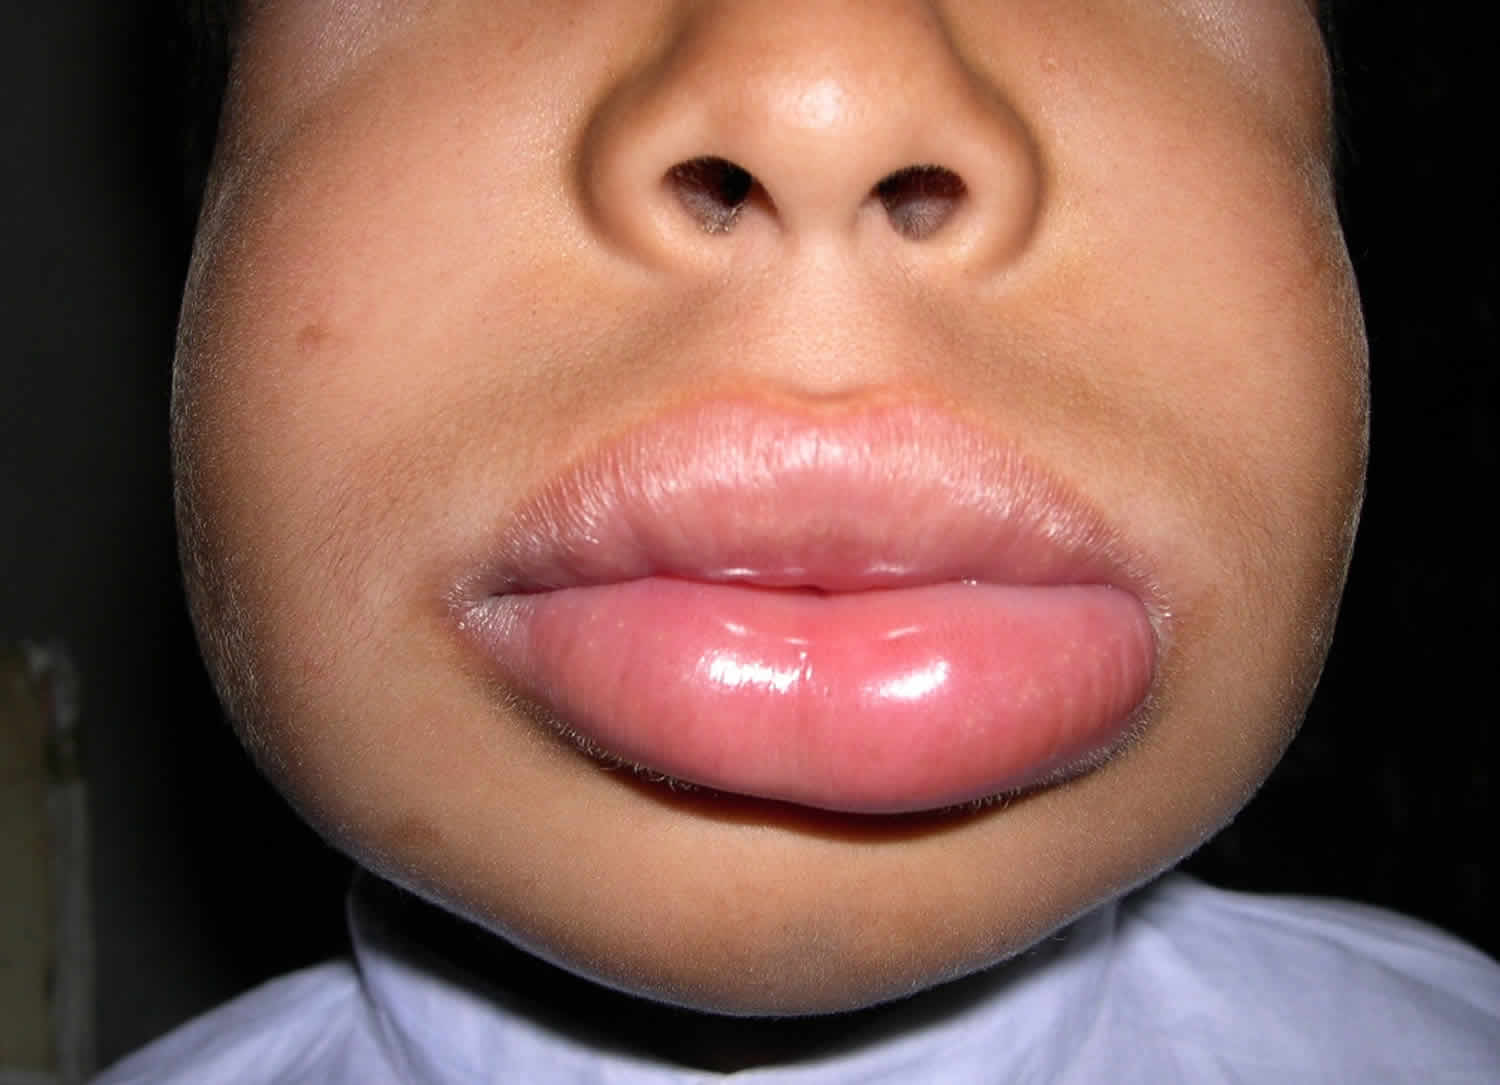 angioedema lips